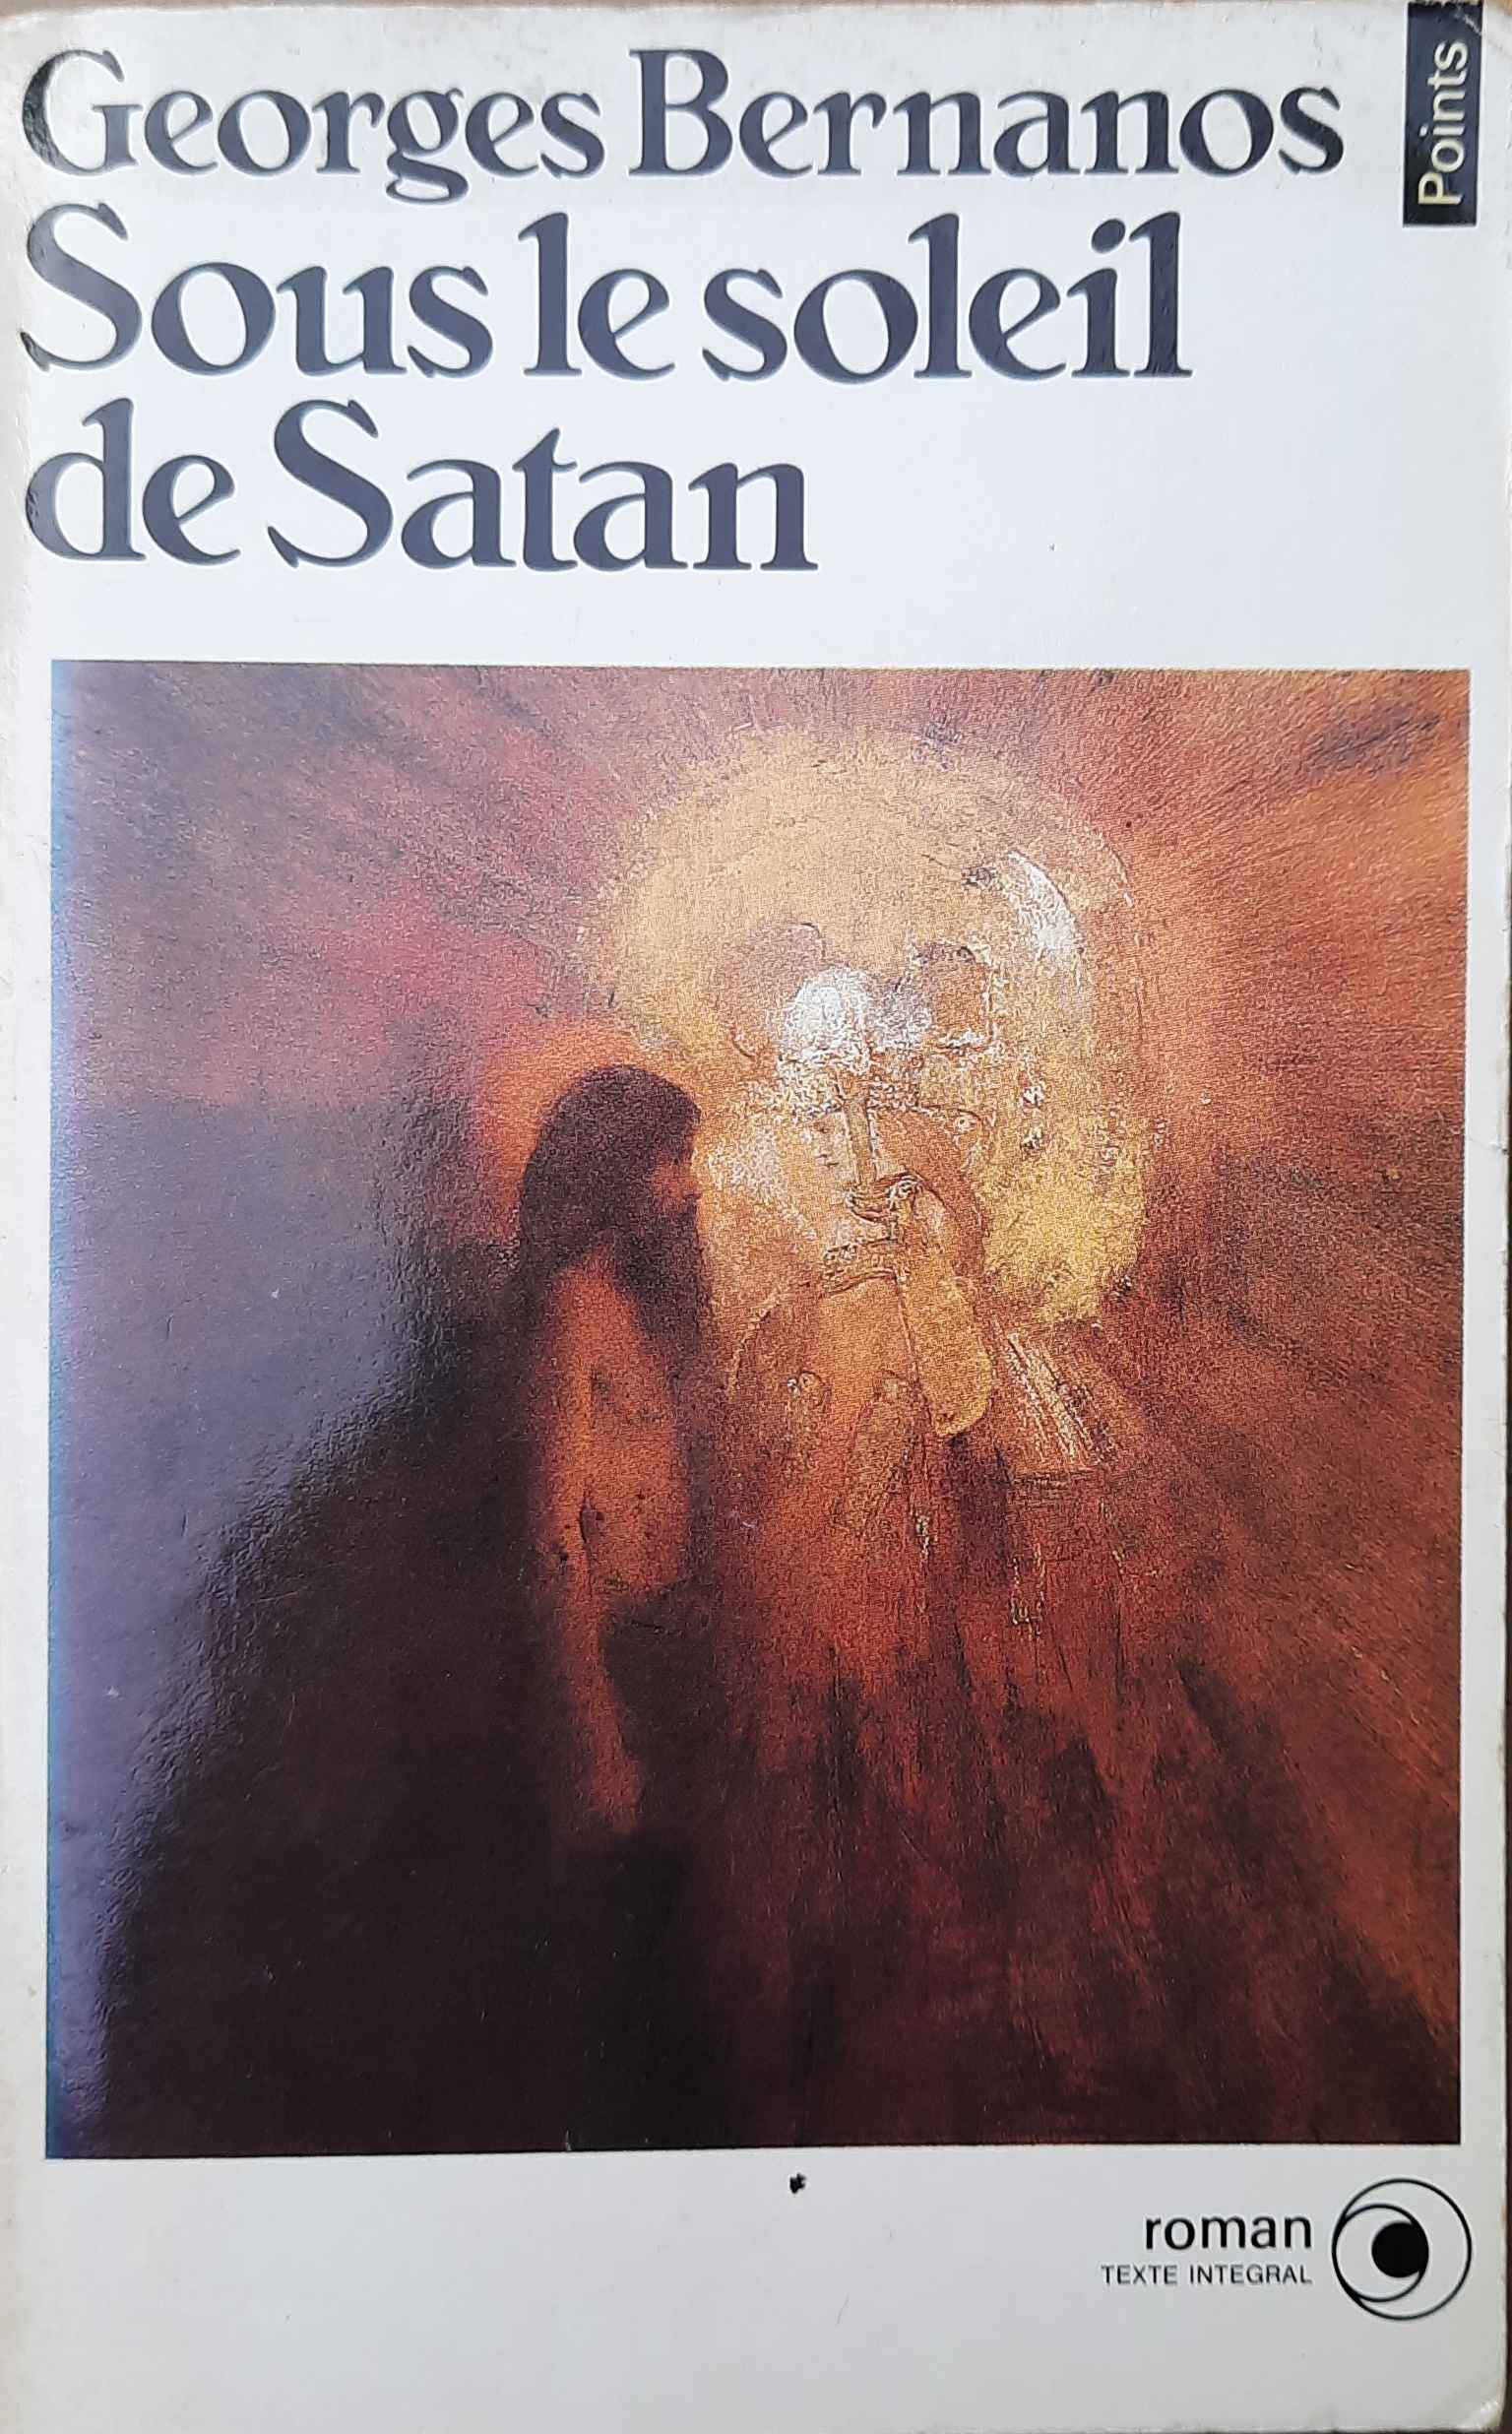 Book cover 202108232037: BERNANOS Georges | Sous le soleil de Satan